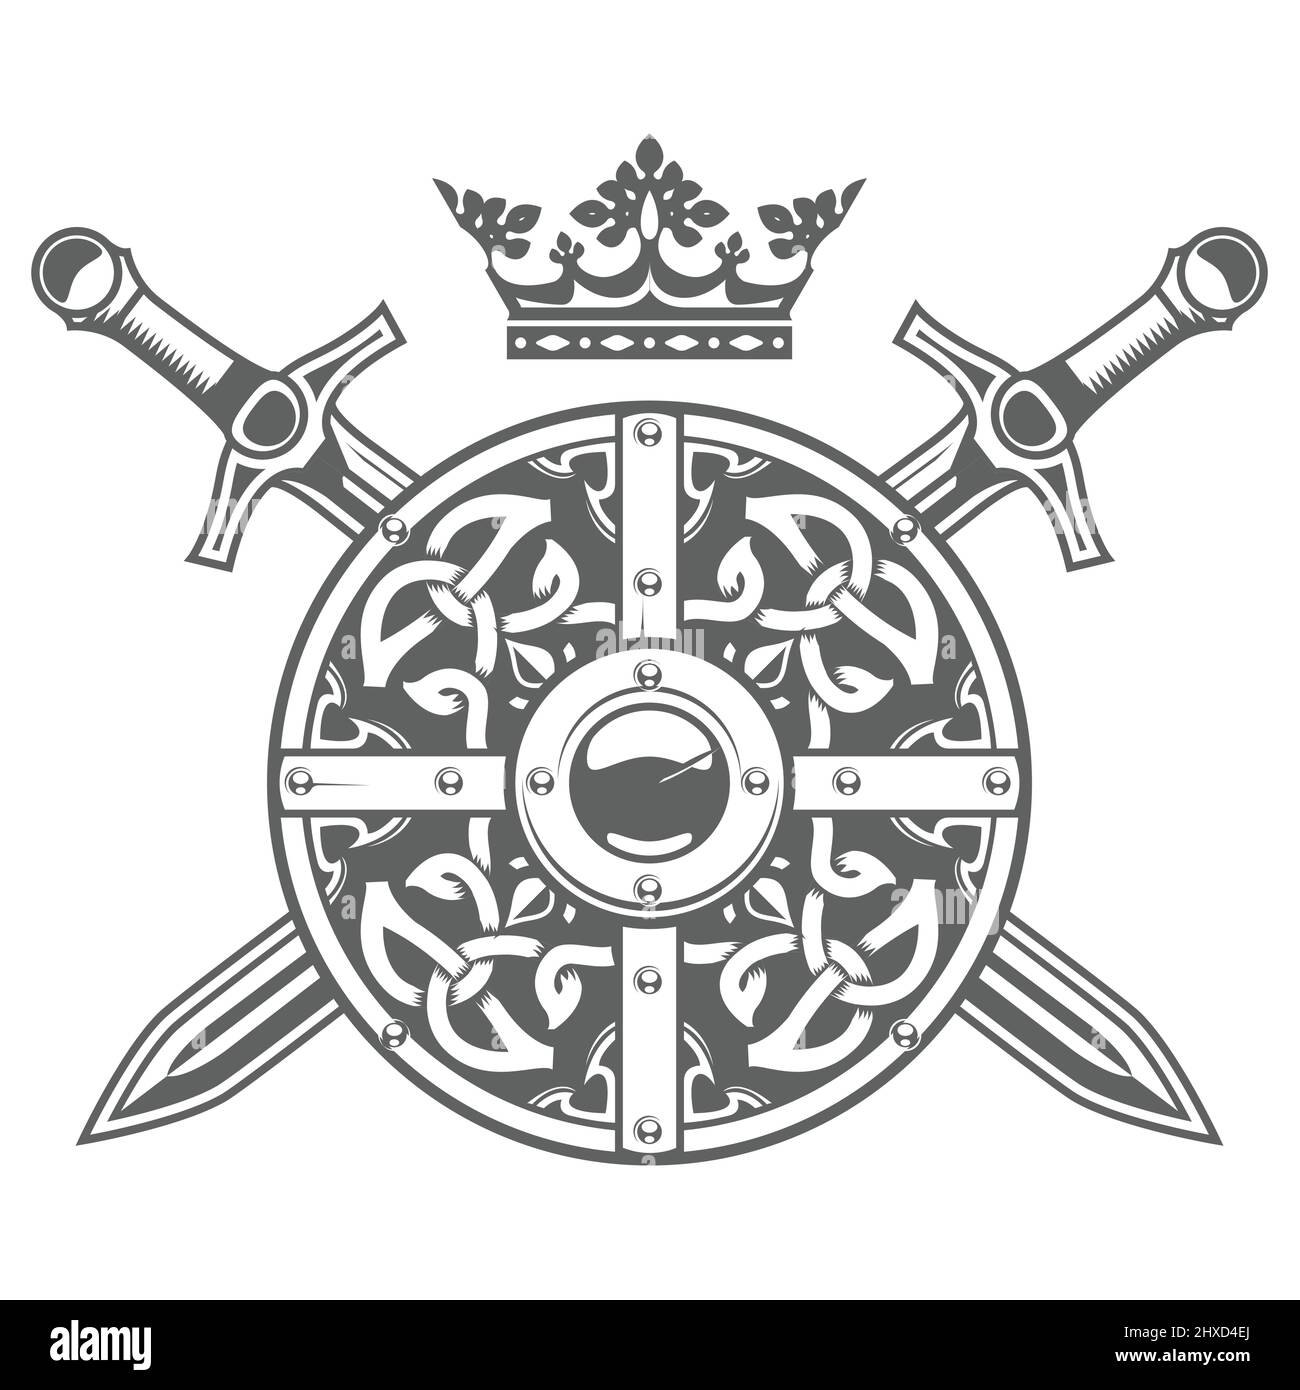 Bouclier rond avec motif fantaisie, cime et épées croisées, blason médiéval et blason chevalier, vecteur Illustration de Vecteur